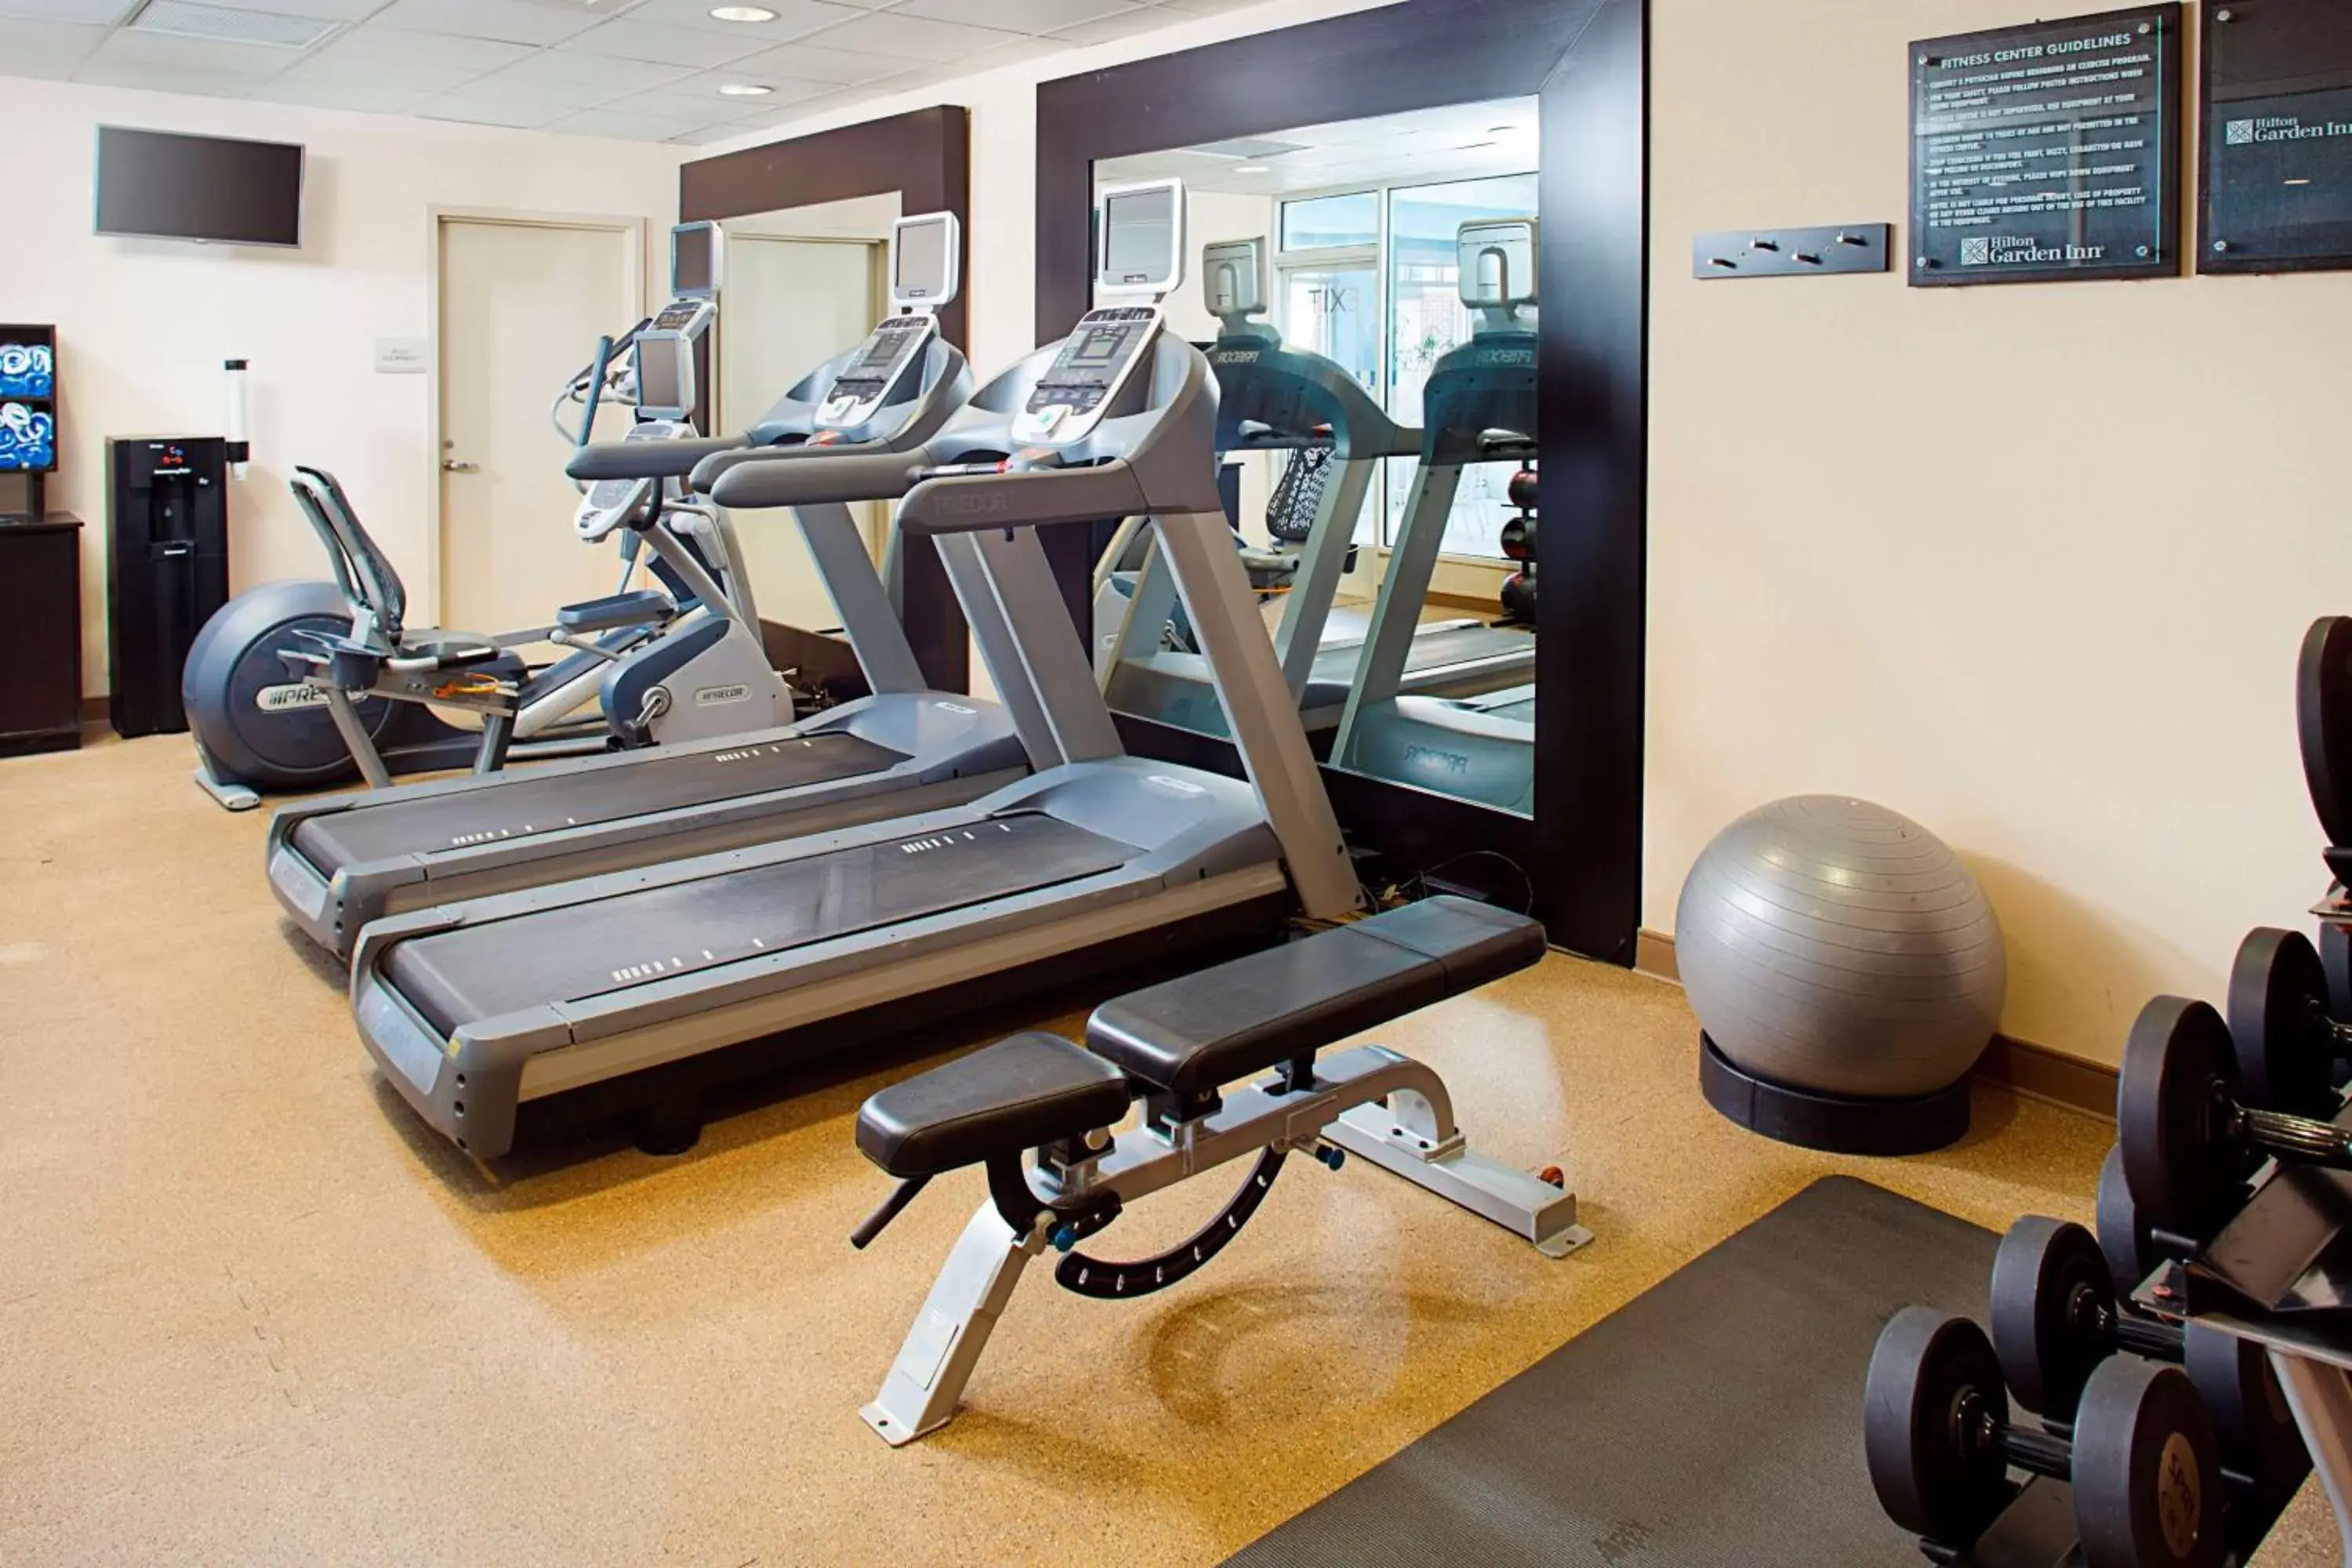 Fitness centre/facilities, Fitness Center/Facilities in Hilton Garden Inn Hartford North-Bradley International Airport